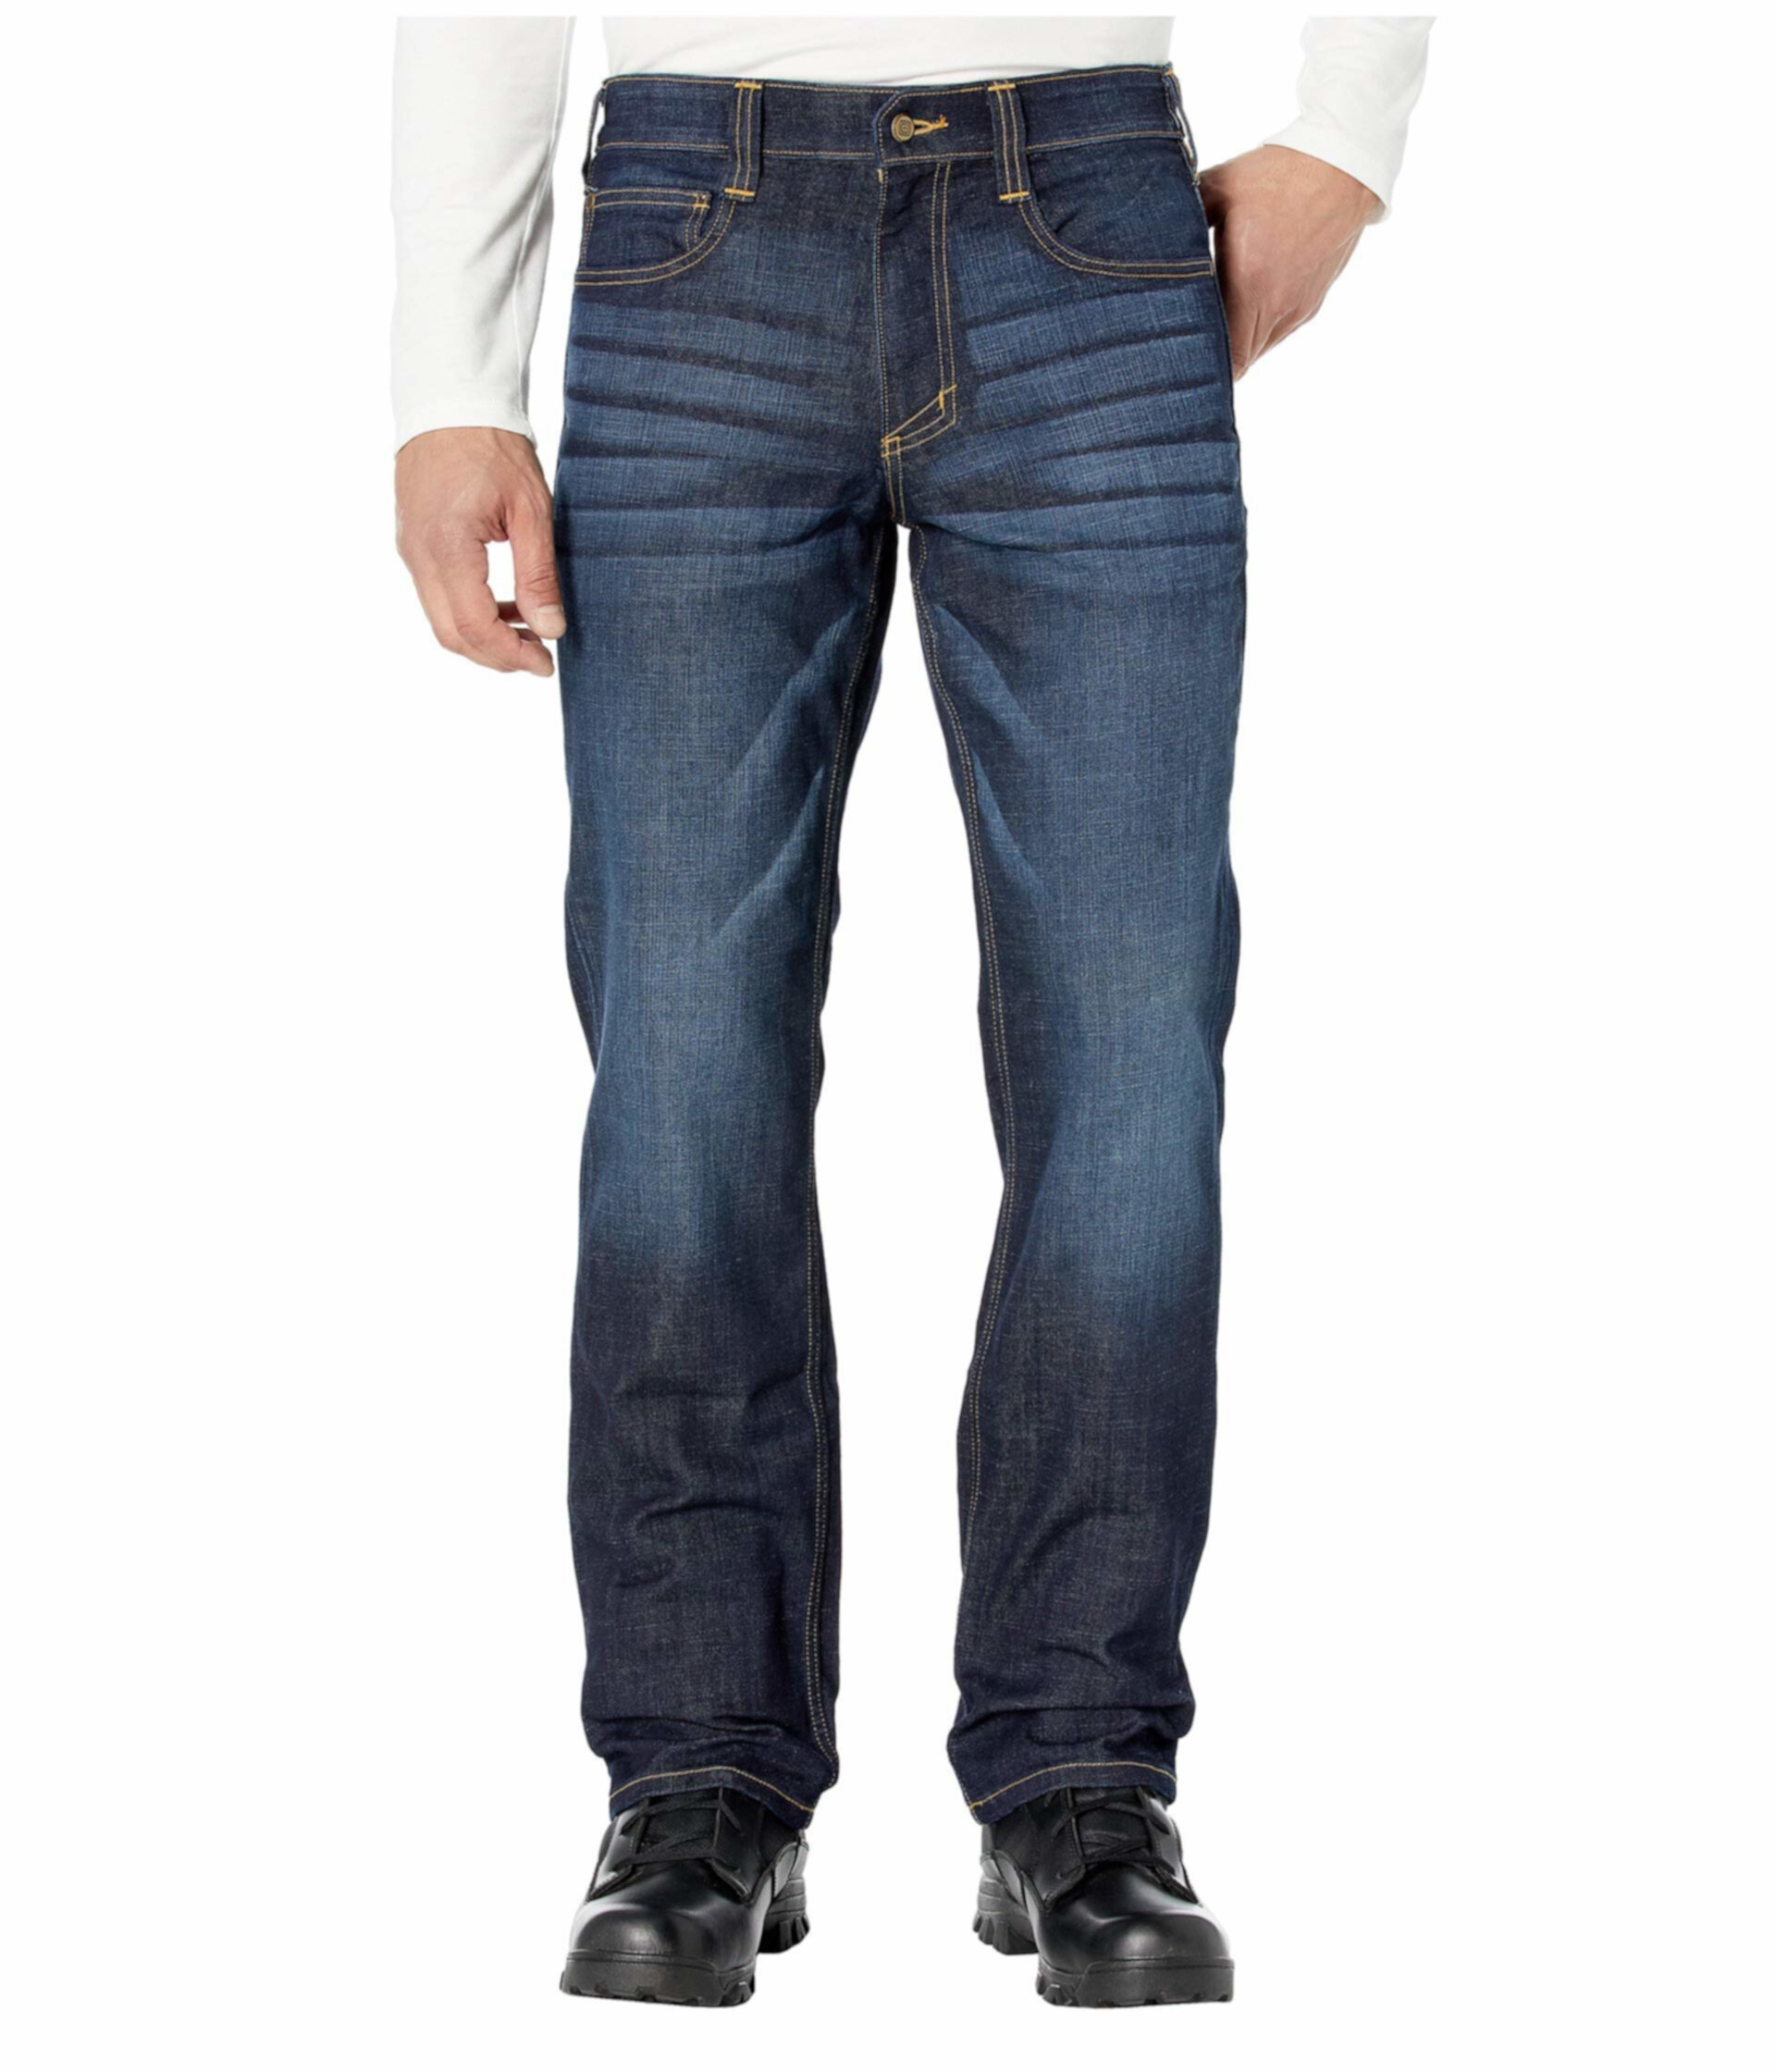 Прямые джинсы Defender-Flex с эффектом темно-синего цвета 5.11 Tactical